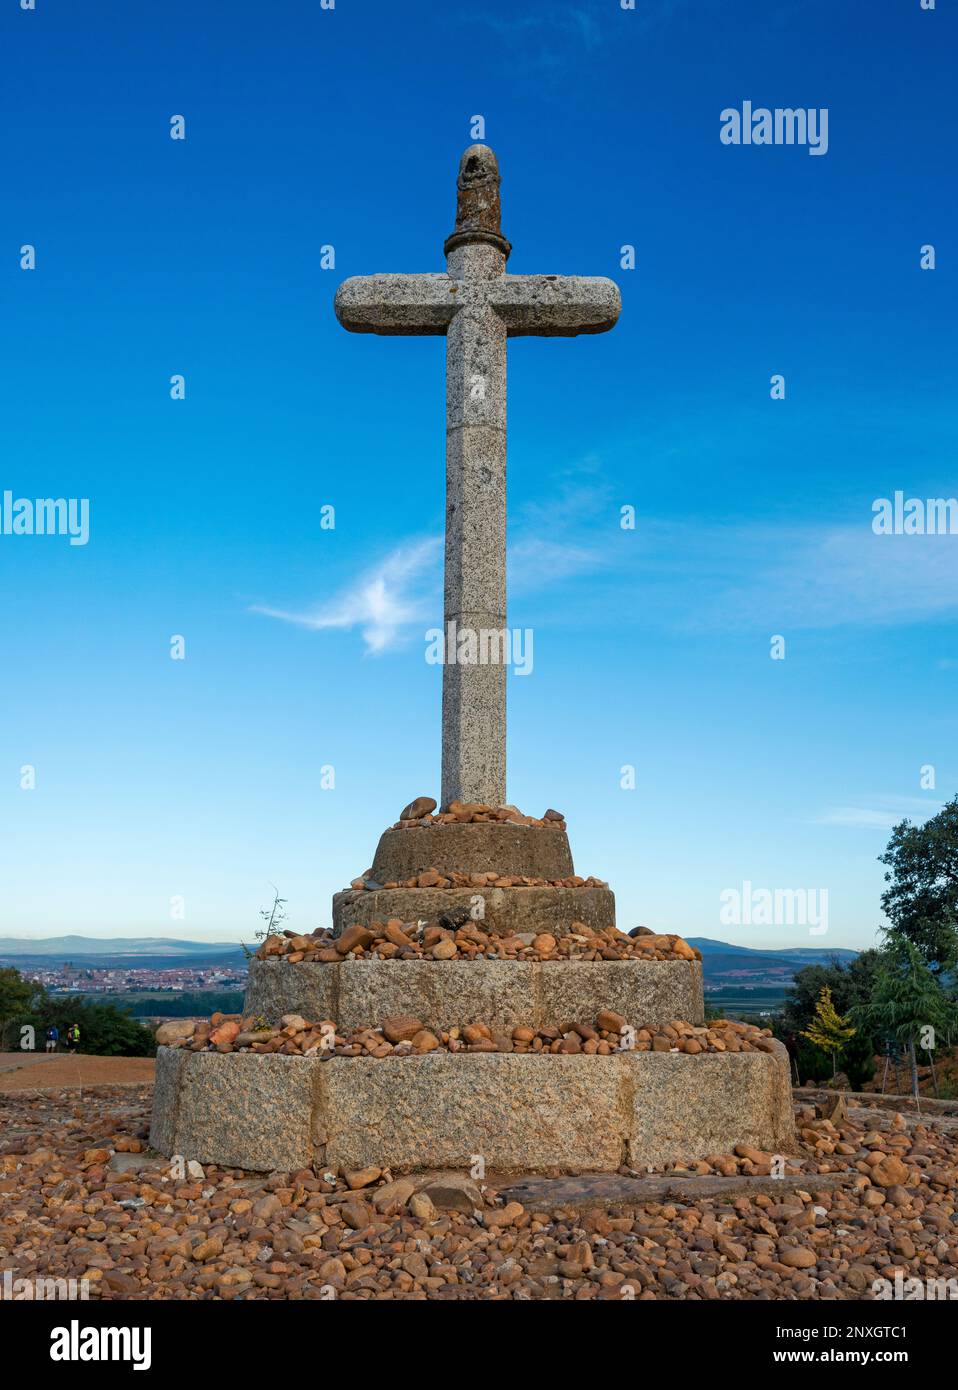 Croce in pietra - Crucero de Santo Toribio, un punto di riferimento storico sul cammino di Santiago vicino a Leon, Spagna Foto Stock